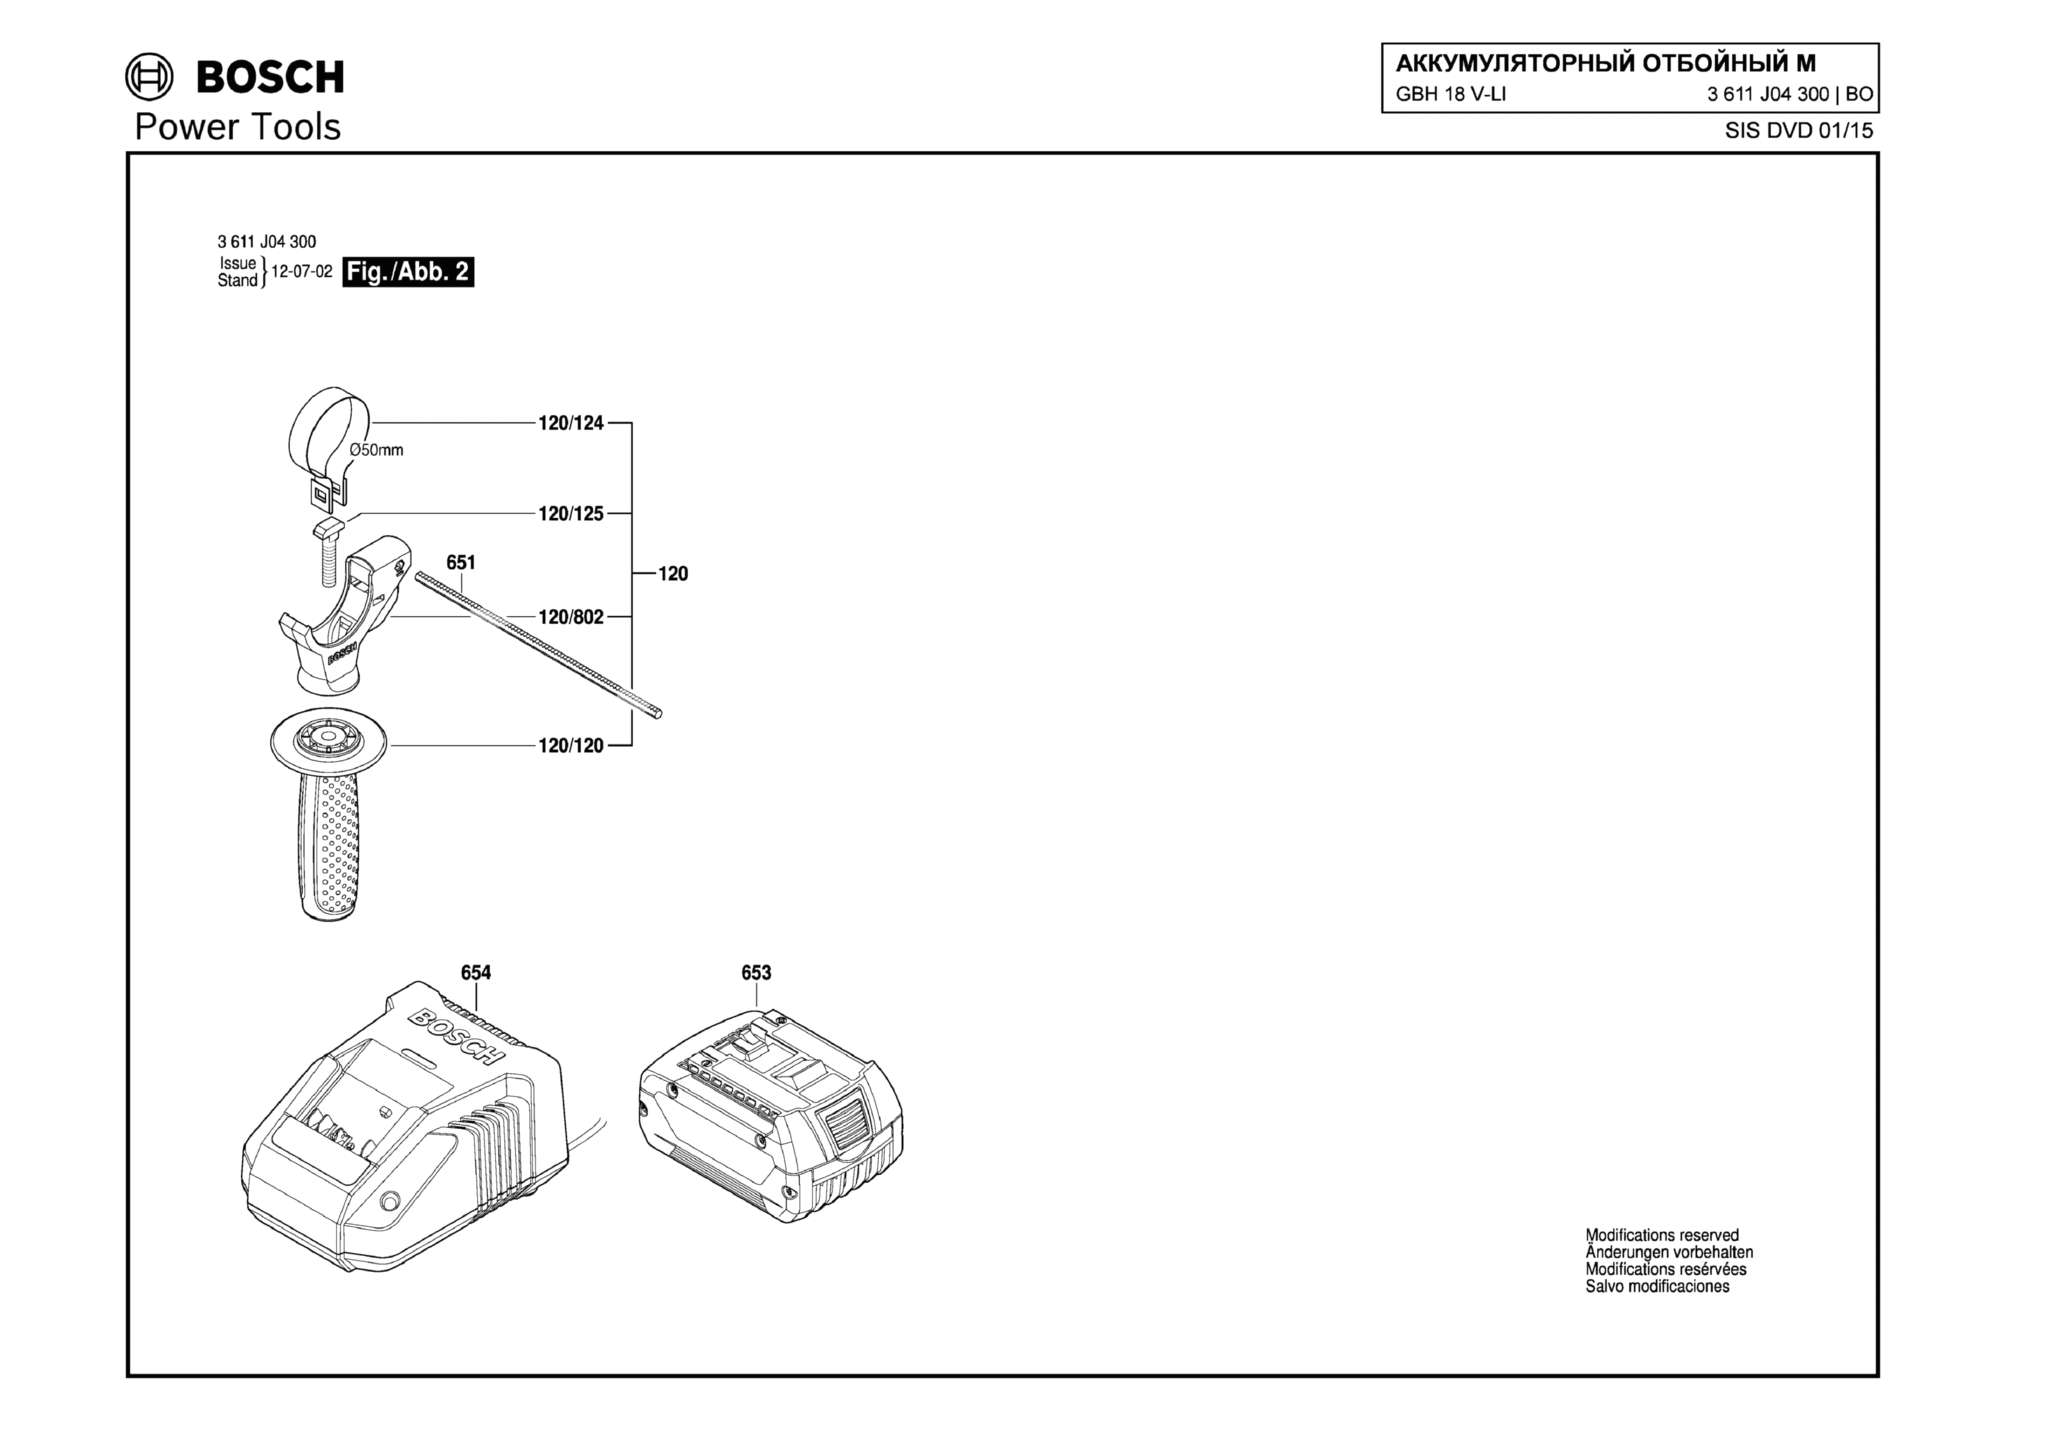 Запчасти, схема и деталировка Bosch GBH 18 V-LI (ТИП 3611J04300) (ЧАСТЬ 2)